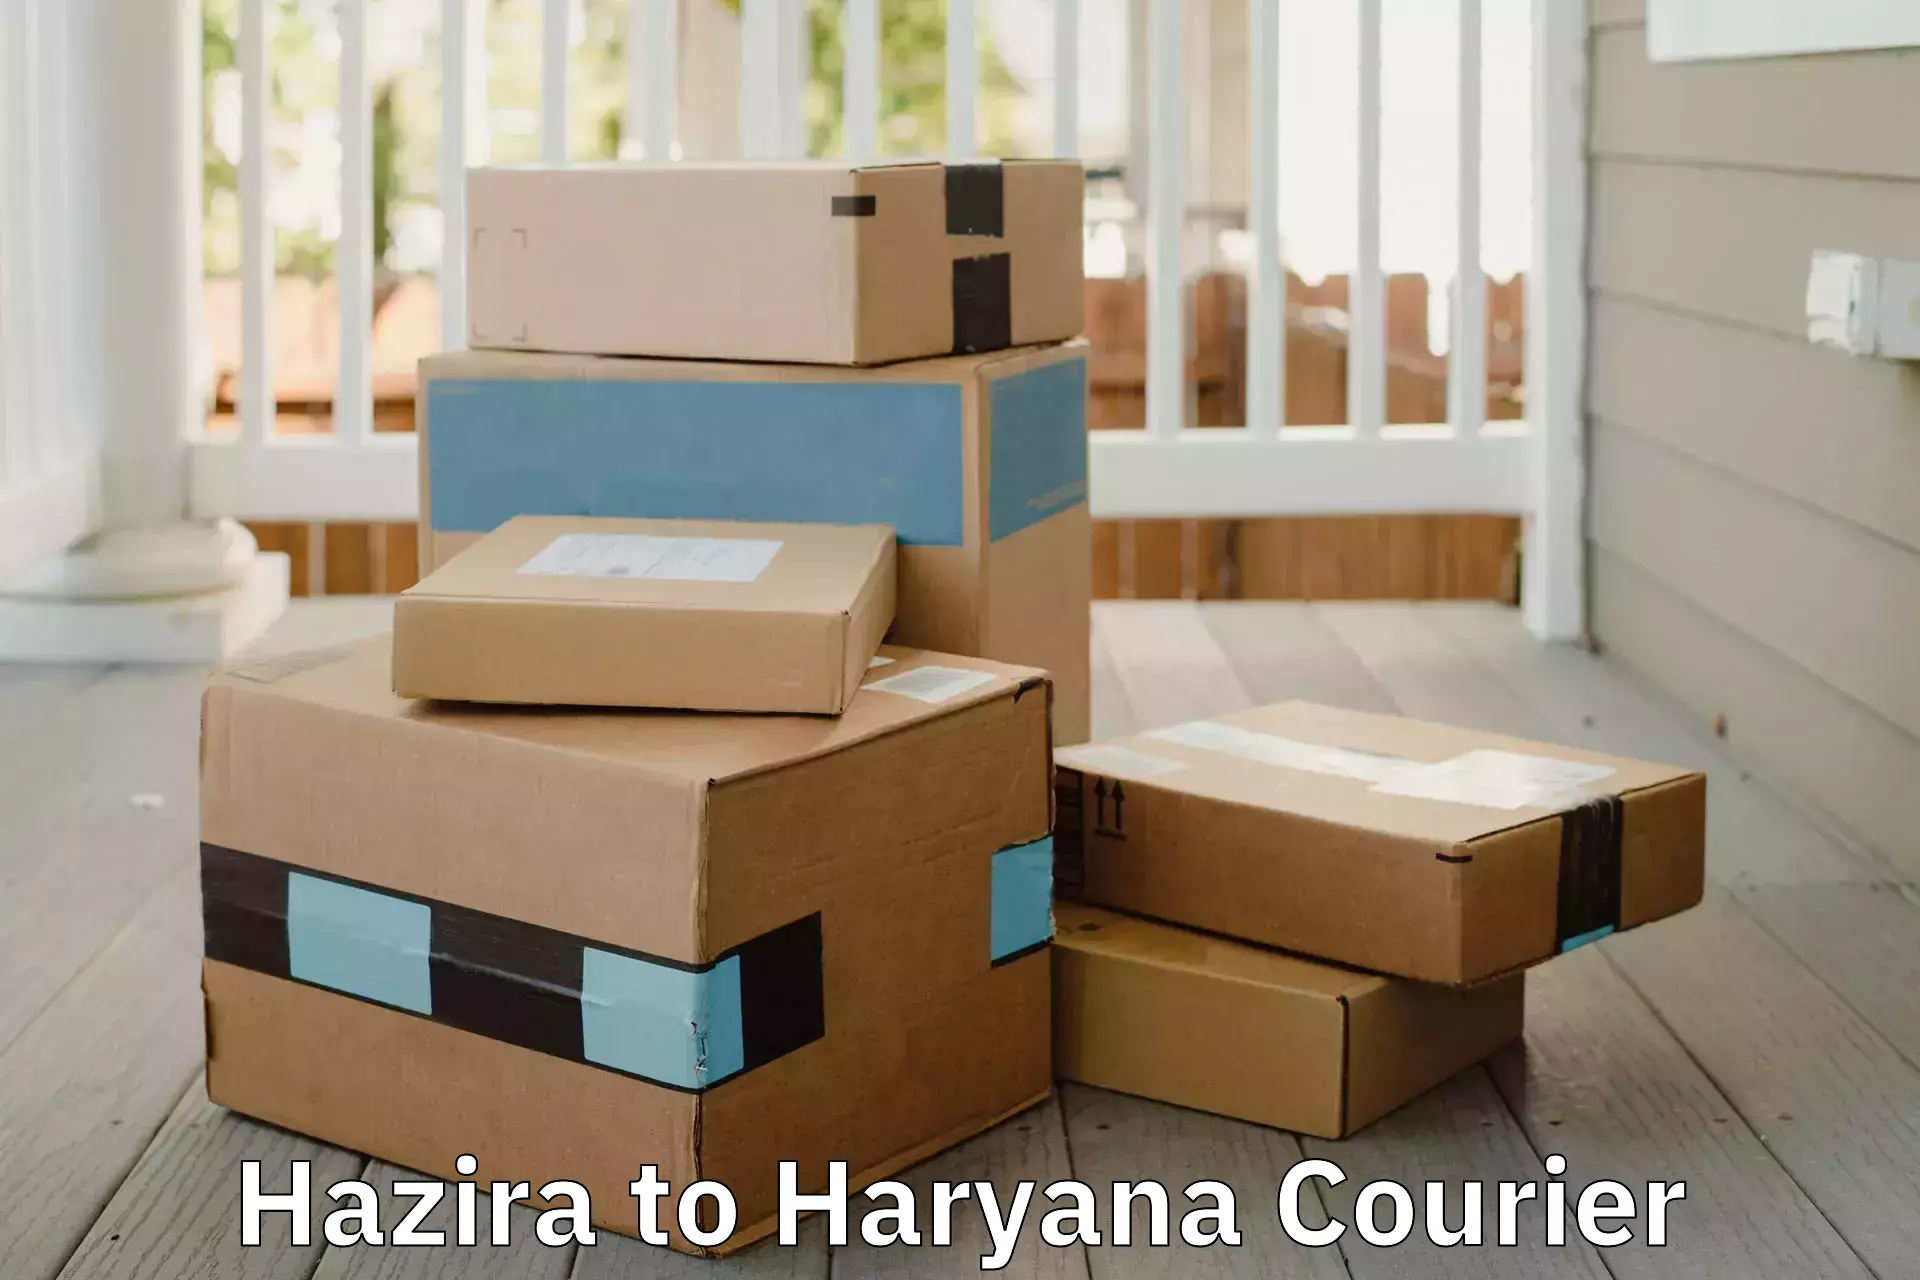 Moving and handling services Hazira to Chirya